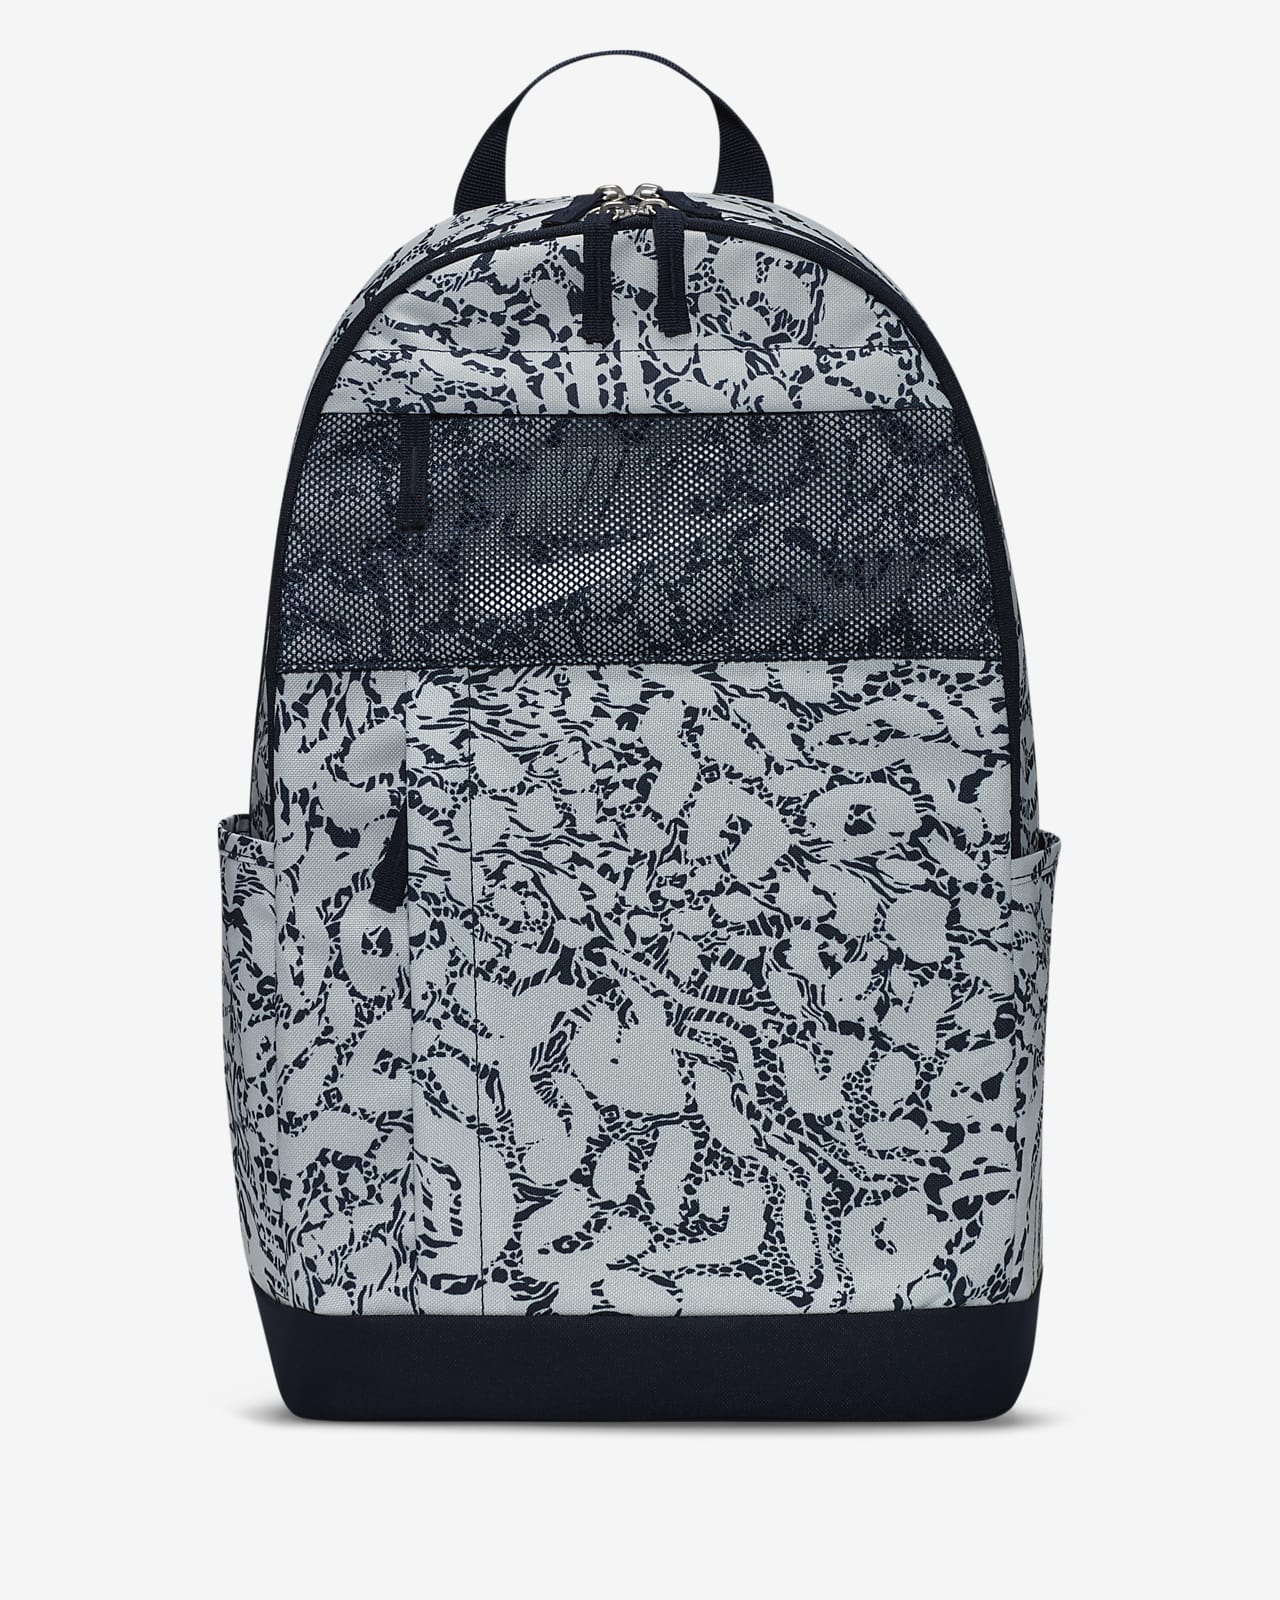 Nike Backpack (21L)